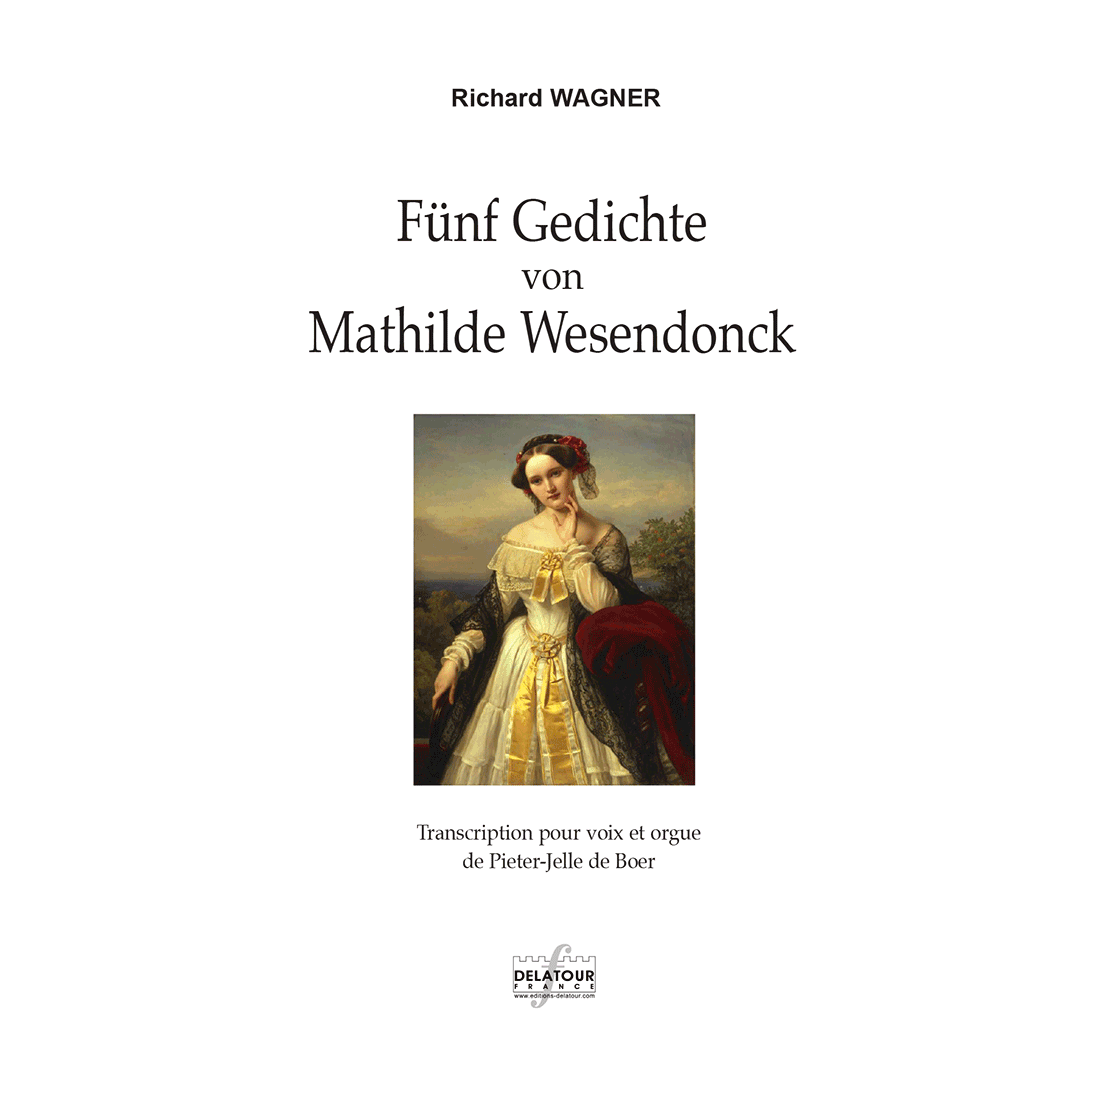 Fünf Gedichte von Mathilde Wesendonck pour voix et orgue